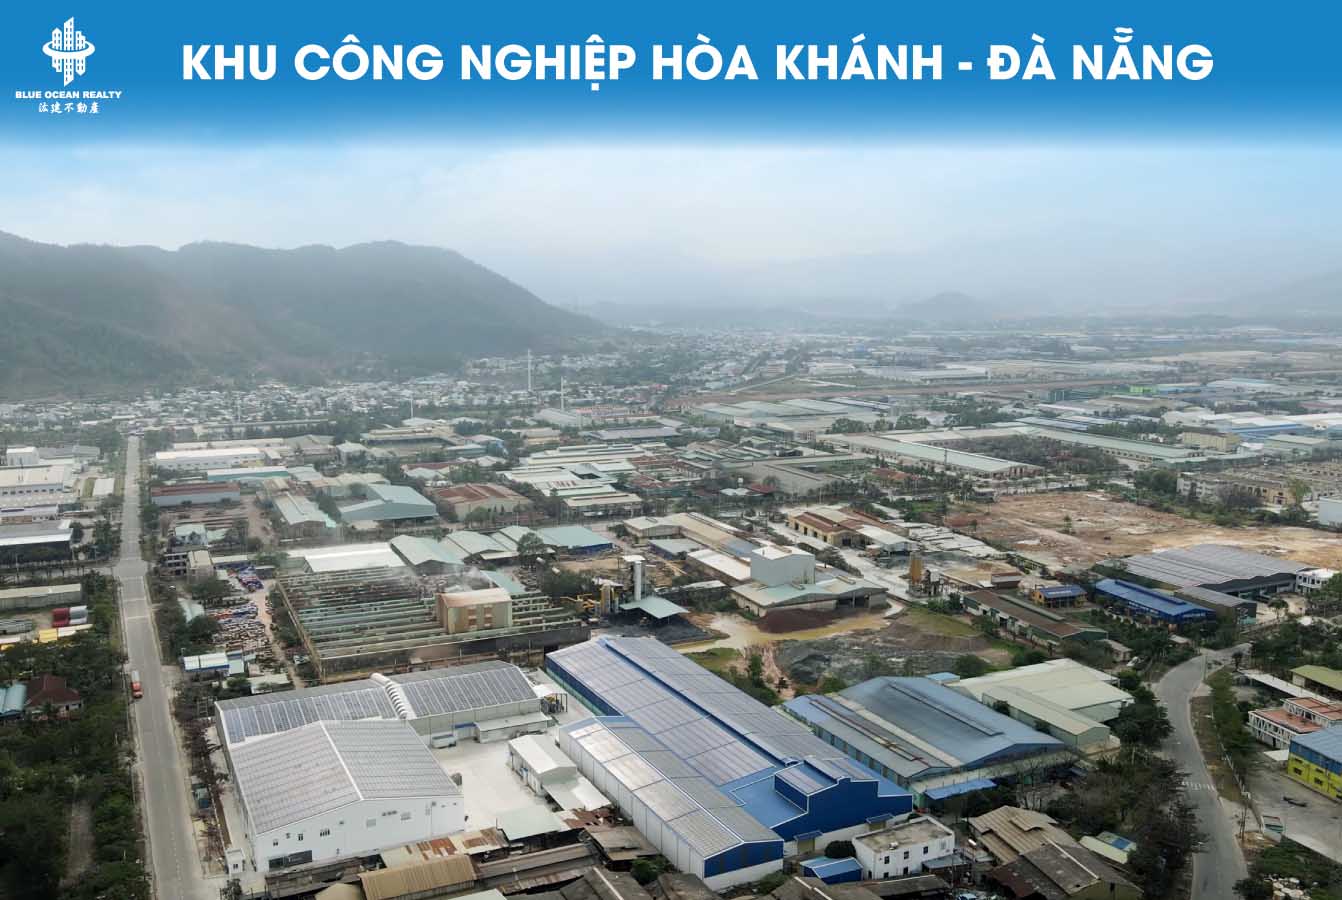 Khu công nghiệp (KCN) Hòa Khánh TP Đà Nẵng